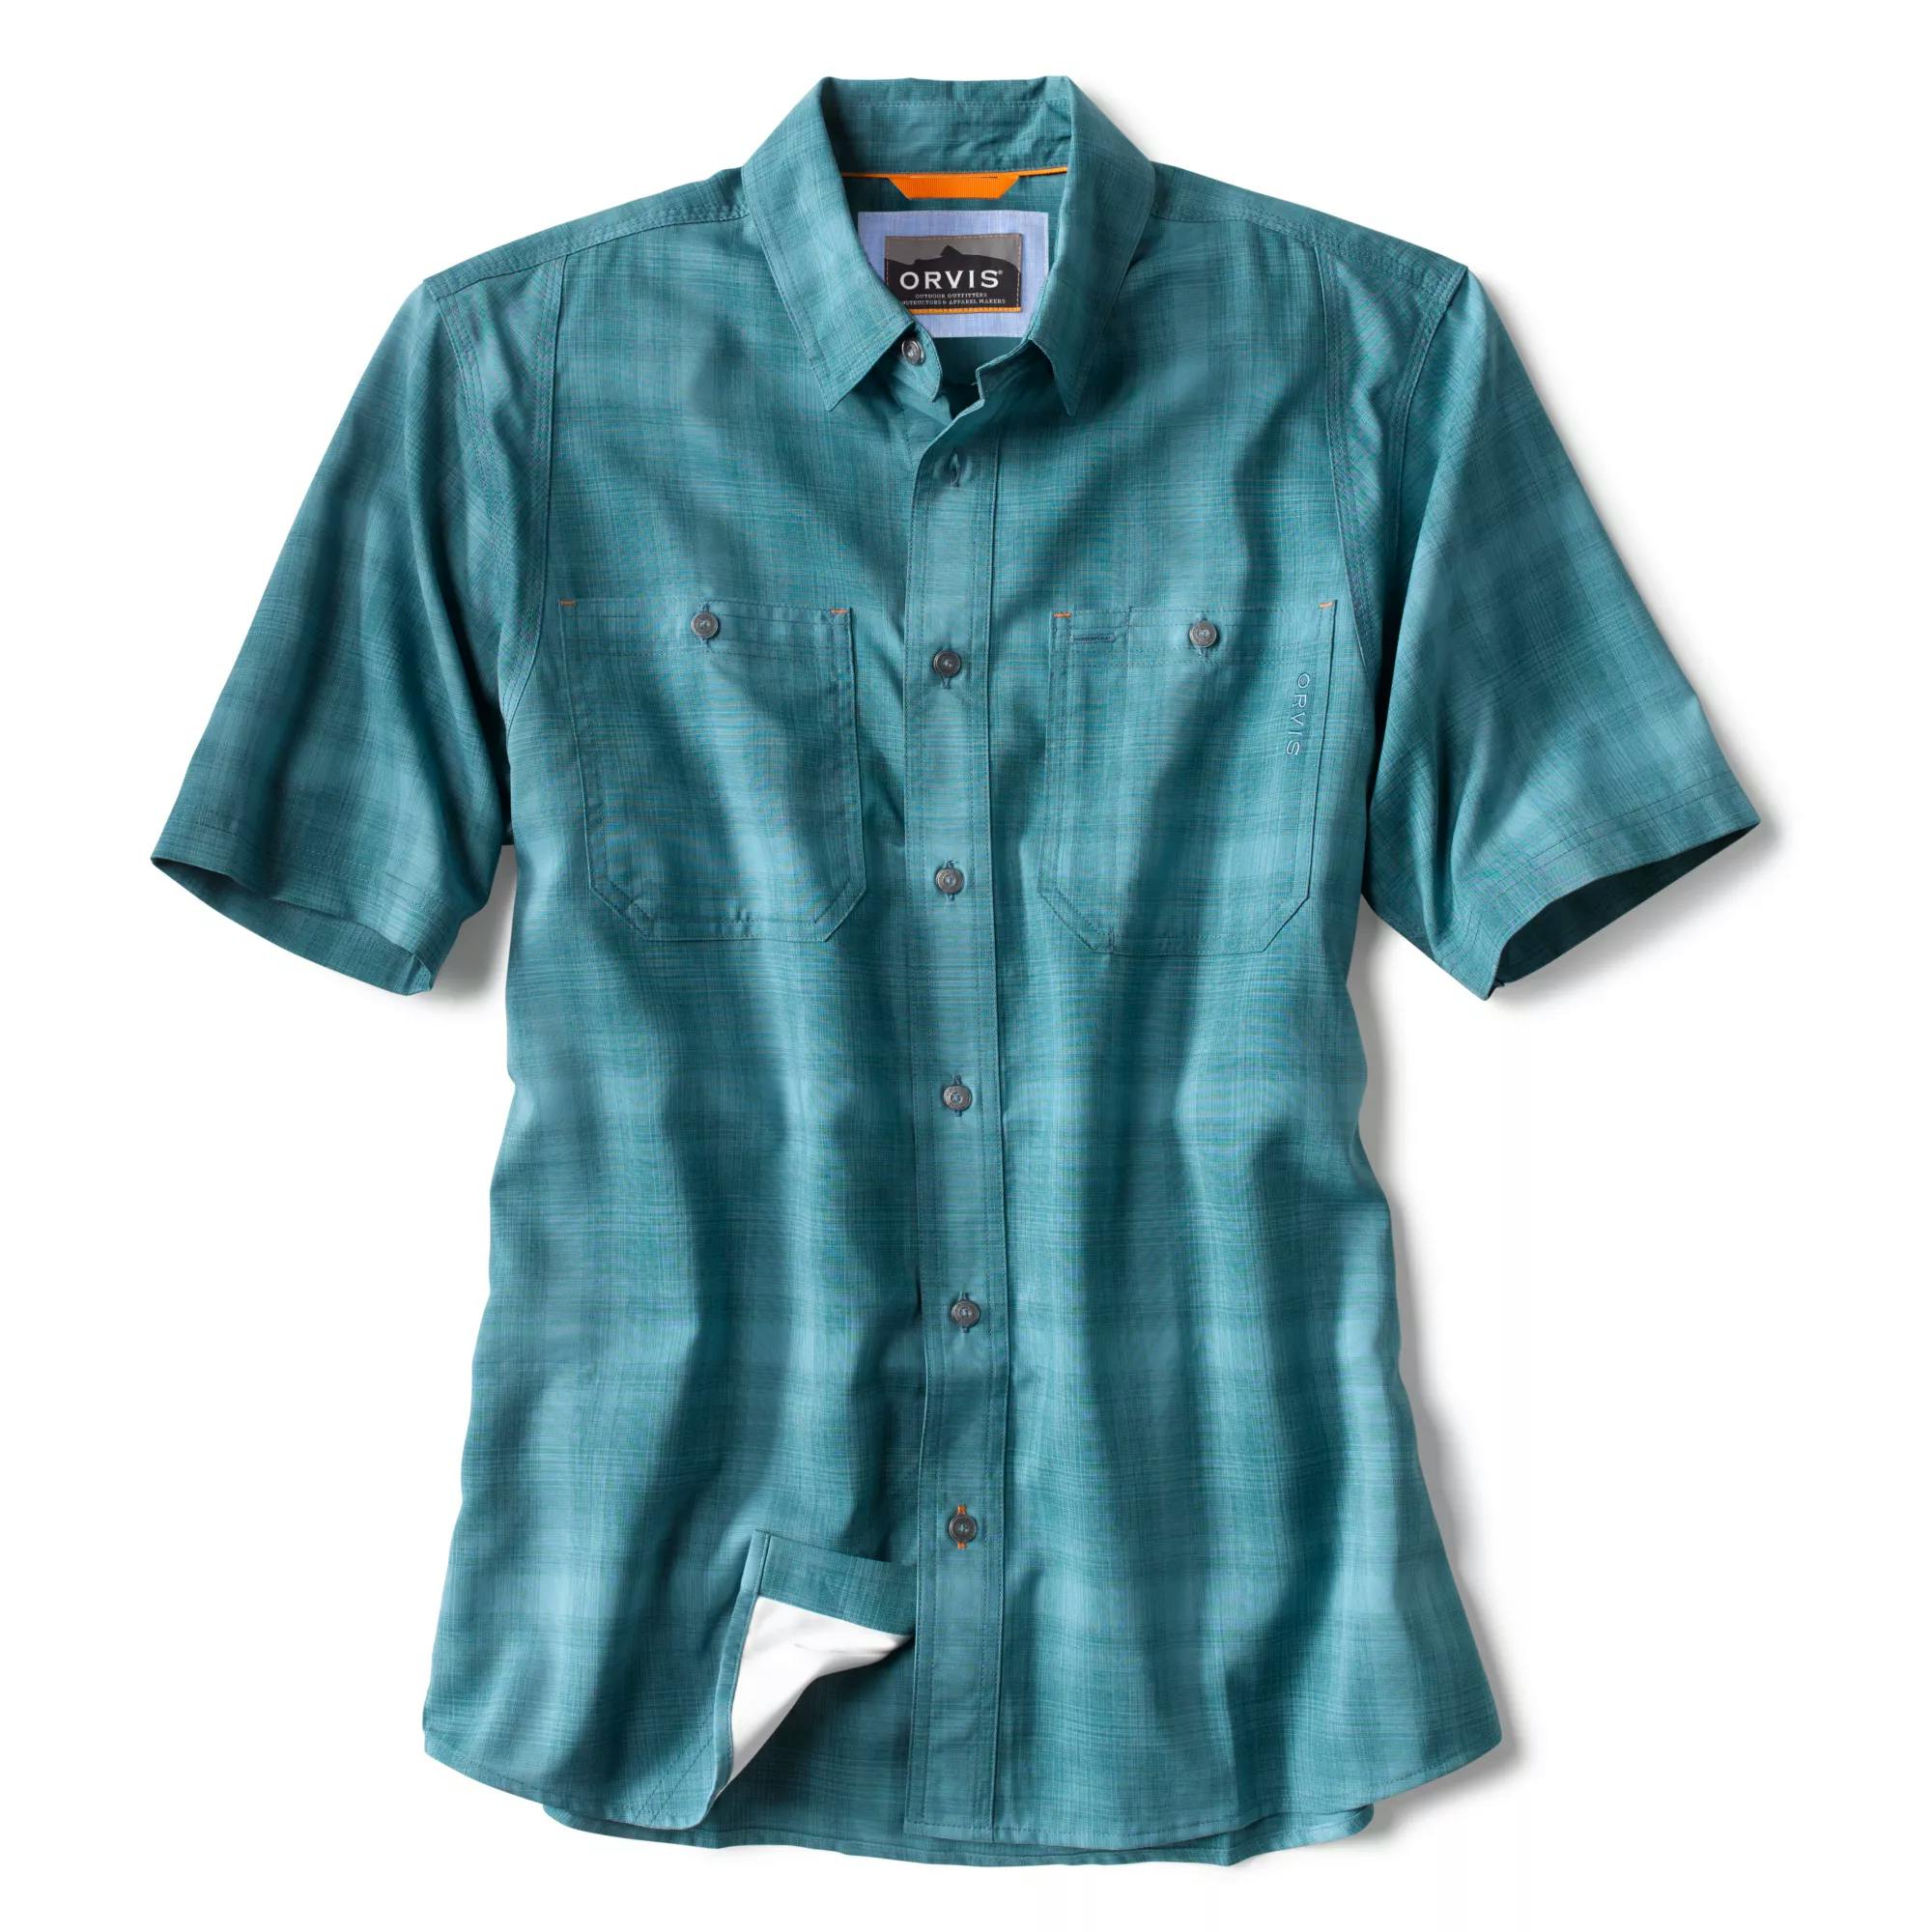 Orvis Men's Tech Chambray Short-Sleeved Work Shirt